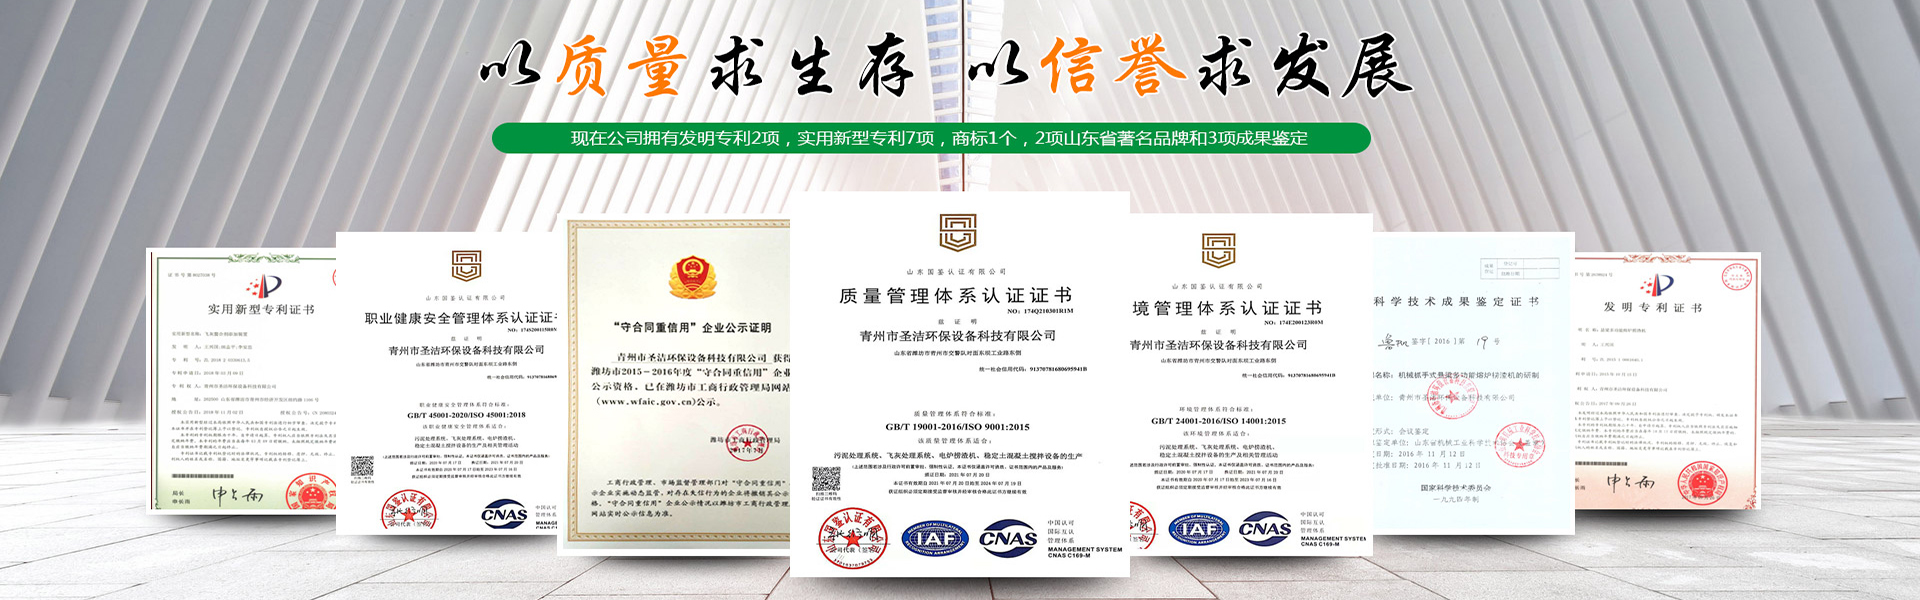 青州市圣洁环保设备科技有限公司